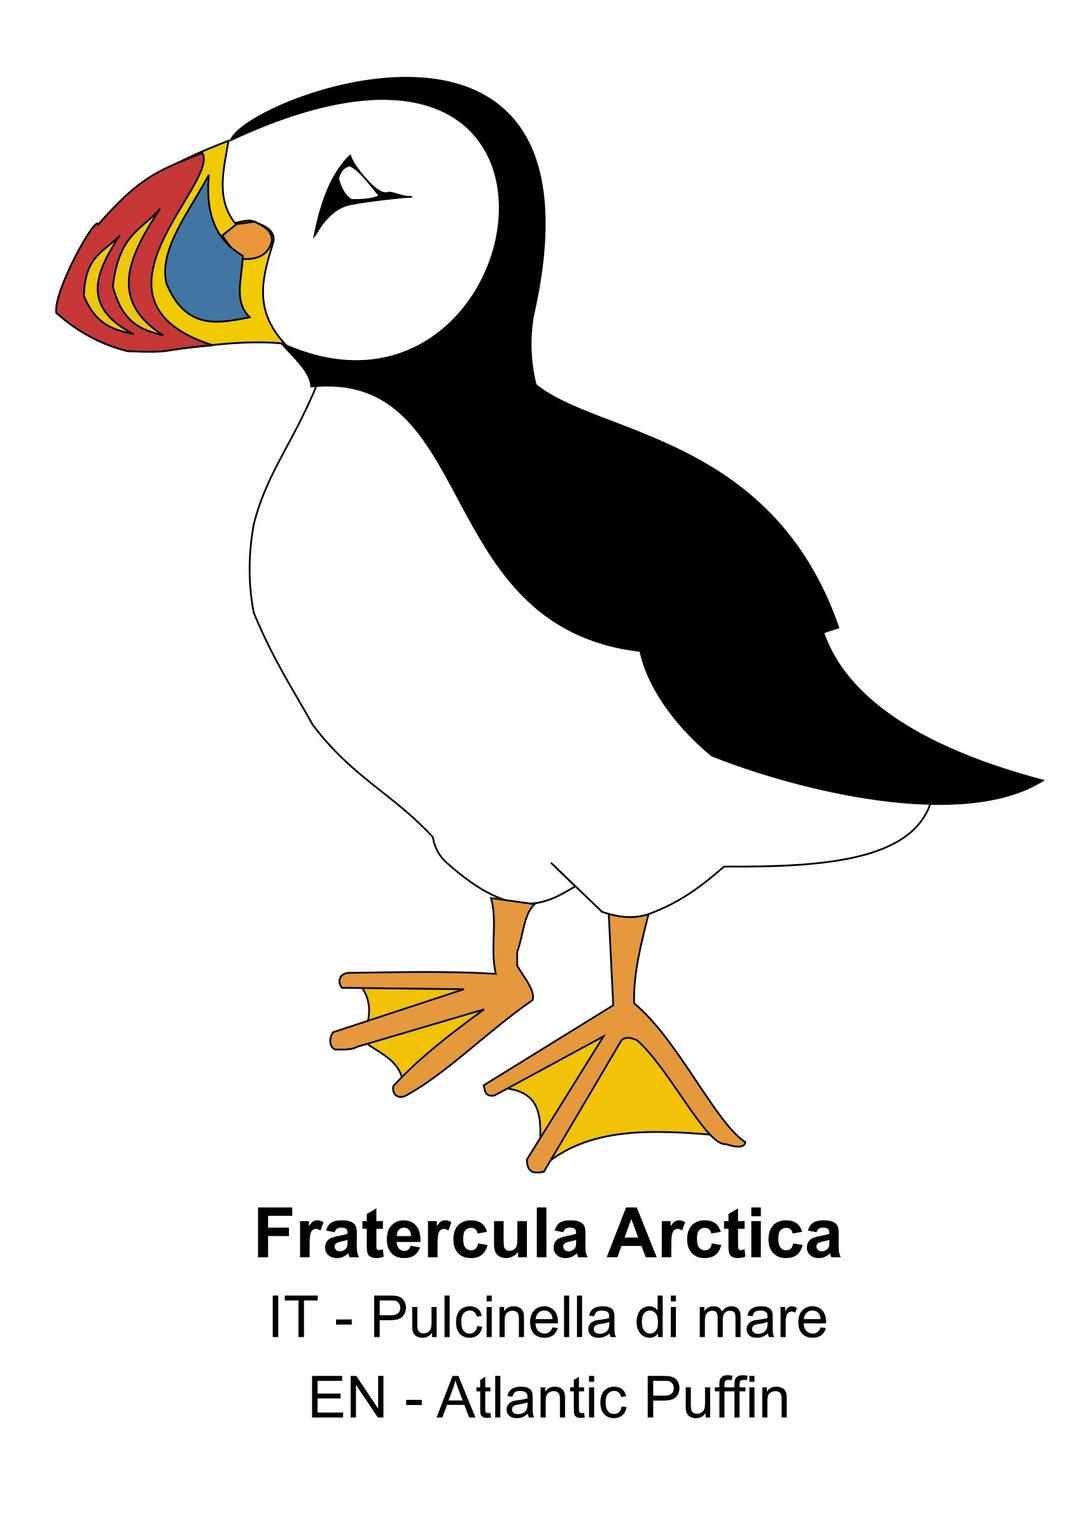 Fratercula Arctica png transparent